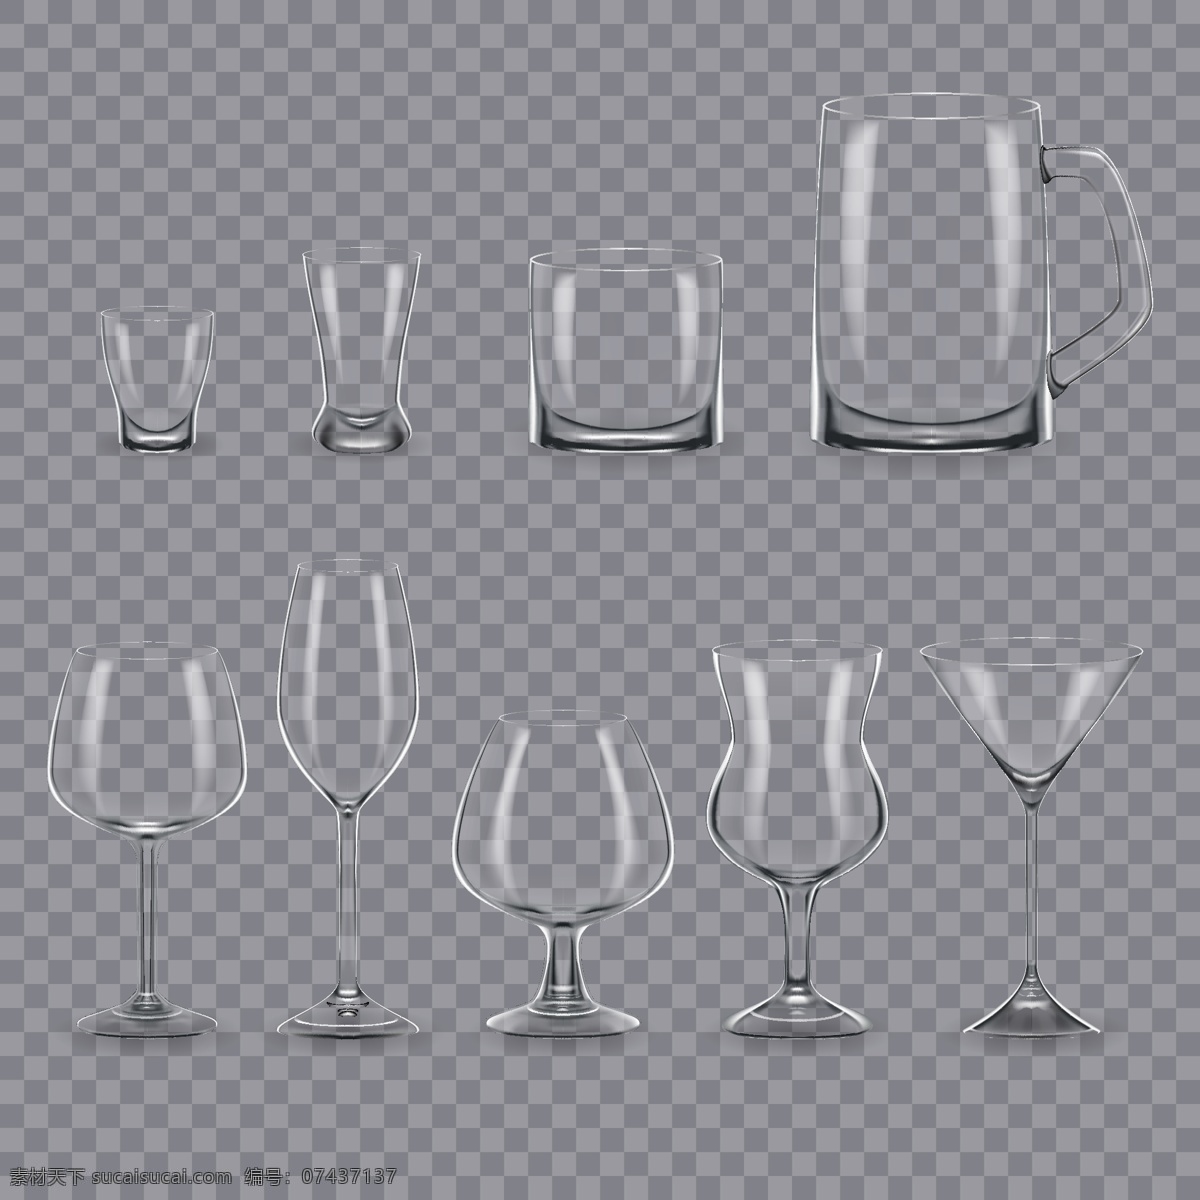 玻璃杯 矢量 玻璃杯矢量 玻璃杯素材 杯矢量素材 杯矢量 杯素材 杯 酒杯 酒杯矢量 酒杯素材 共享设计矢量 生活百科 生活用品